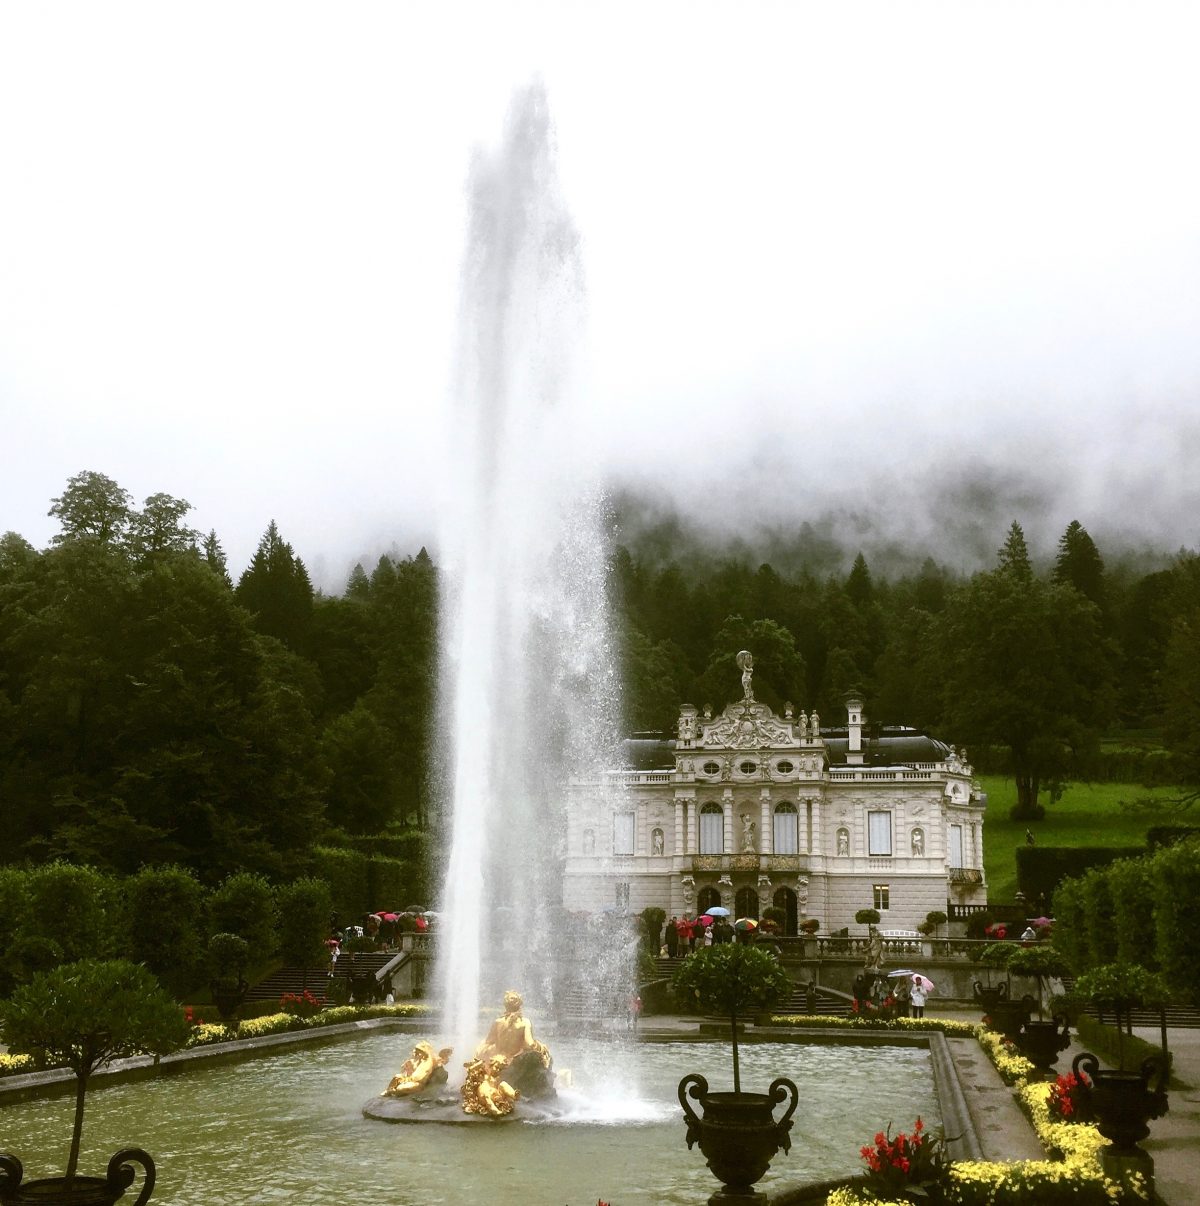 Blick auf das Schloss Linderhof. Im Vordergrund ist der große Teich mit riesiger Fontäne zu erkennen. Bunte Blumen schmücken den Schlossgarten.